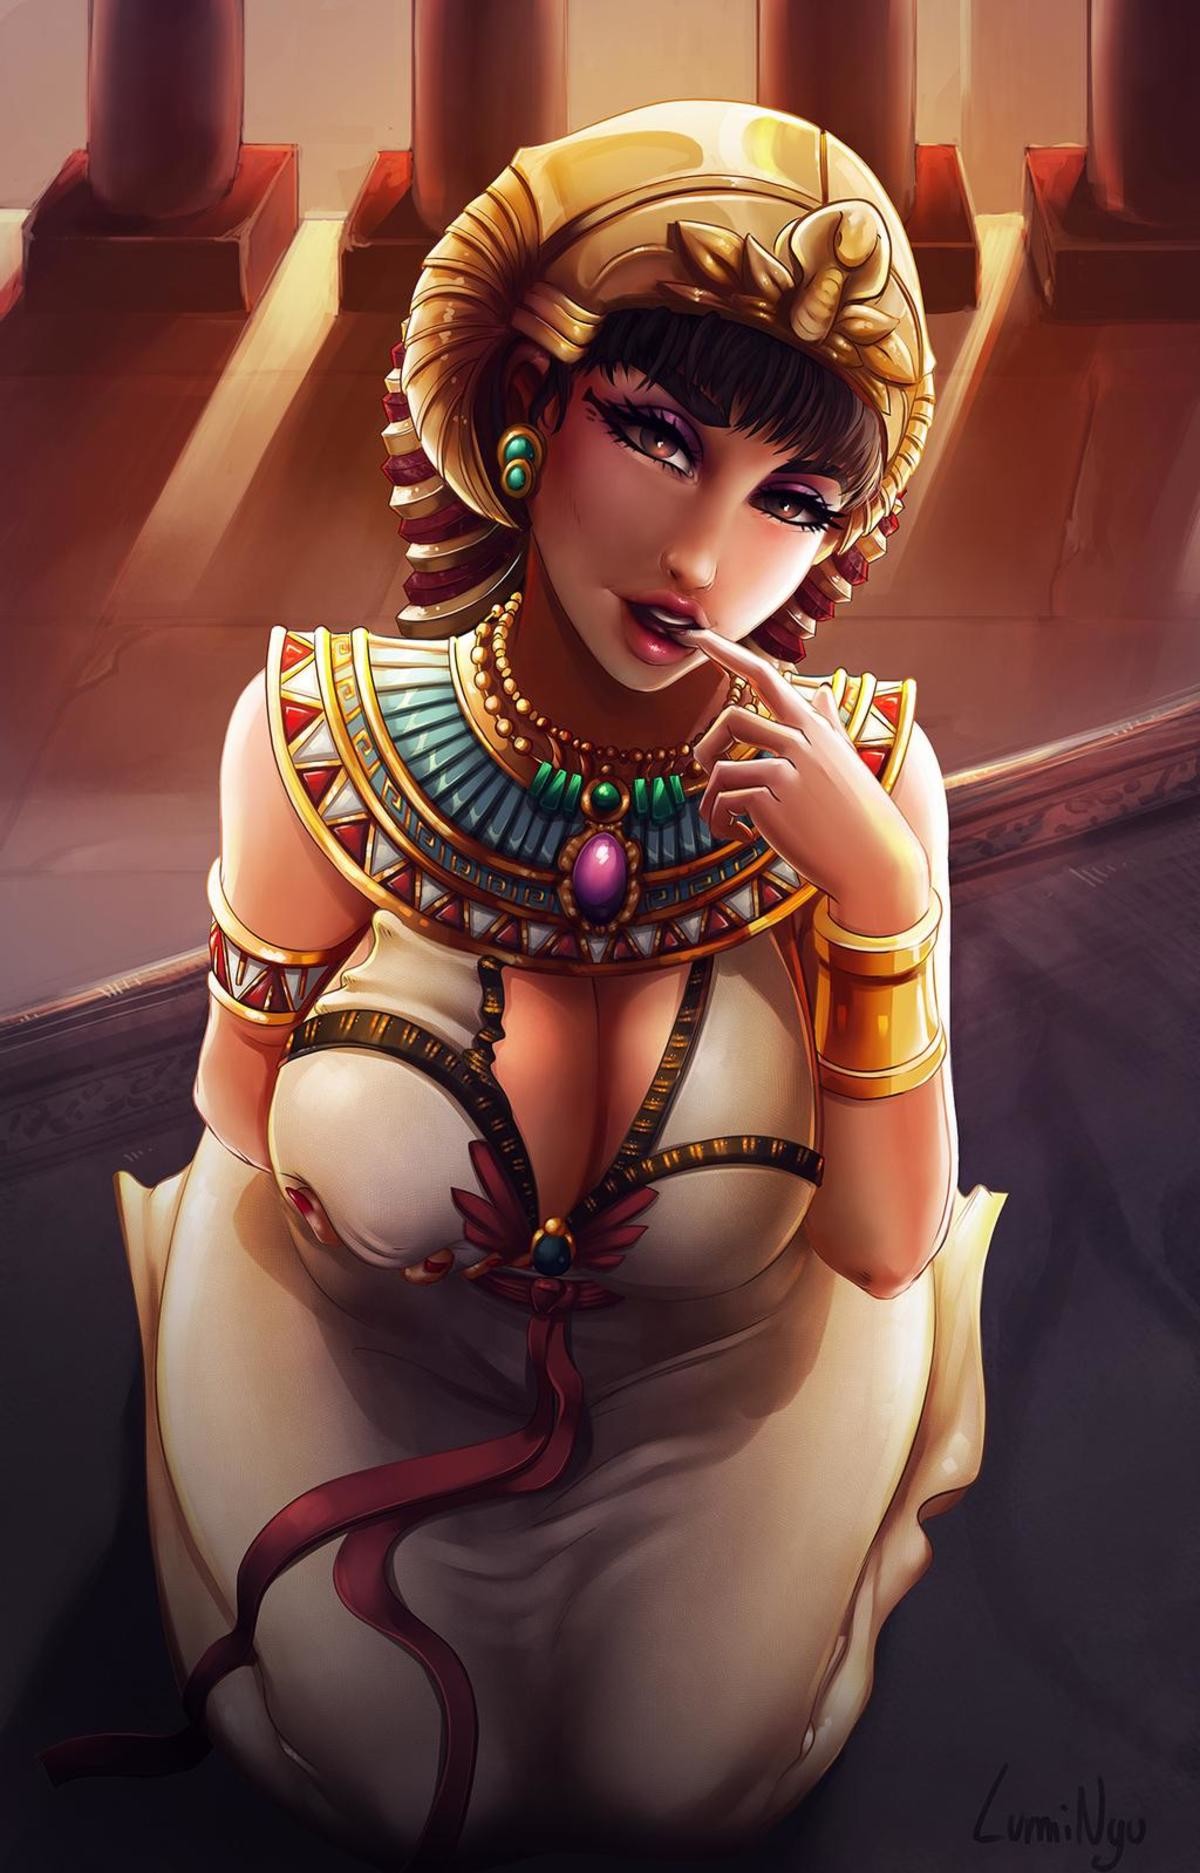 Sexy Cleopatra as a bonus. 